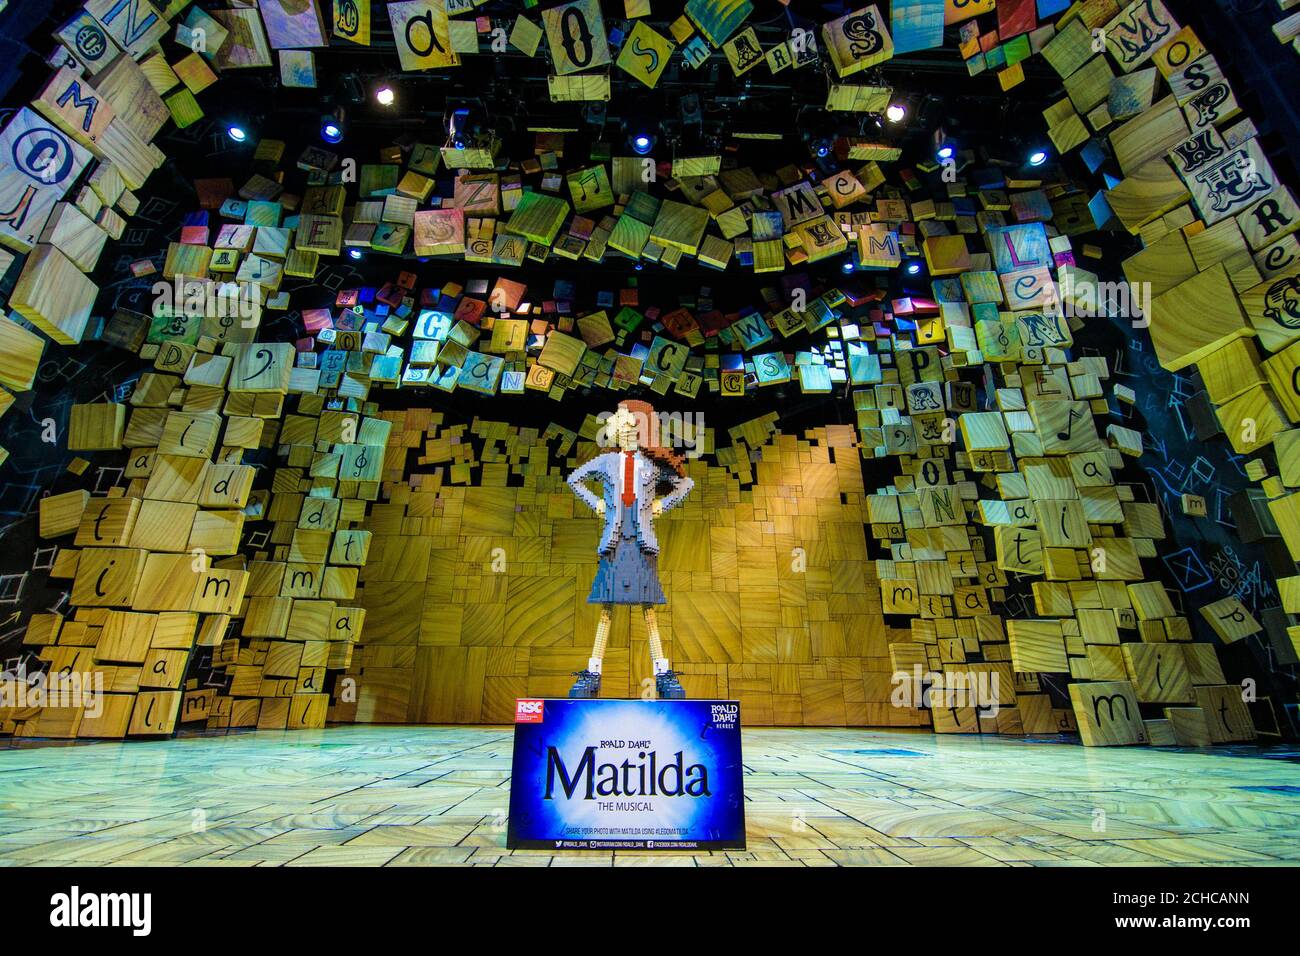 Ein einzigartiger LEGO-Backstein aus der Figur „Matilda“ aus dem Musical „Matilda the Musical“ der Royal Shakespeare Company im Cambridge Theatre London, um den Roald Dahl Day zu feiern, der am 13. September den Geburtstag des Geschichtenerzählers feiert. Stockfoto